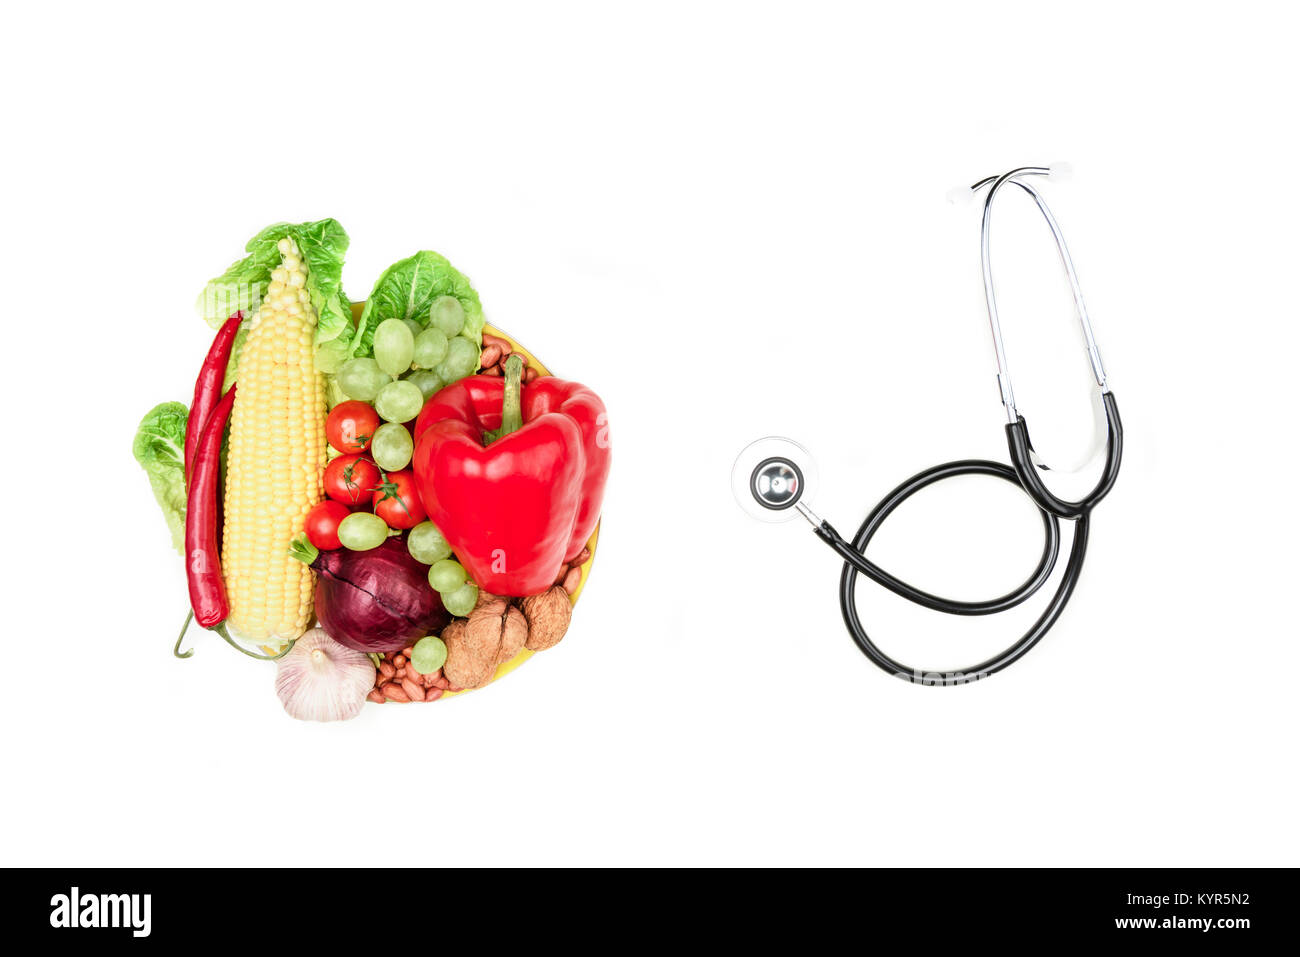 Ensemble de divers légumes, fruits frais et stéthoscope isolé sur blanc, la saine alimentation et de vie concept Banque D'Images